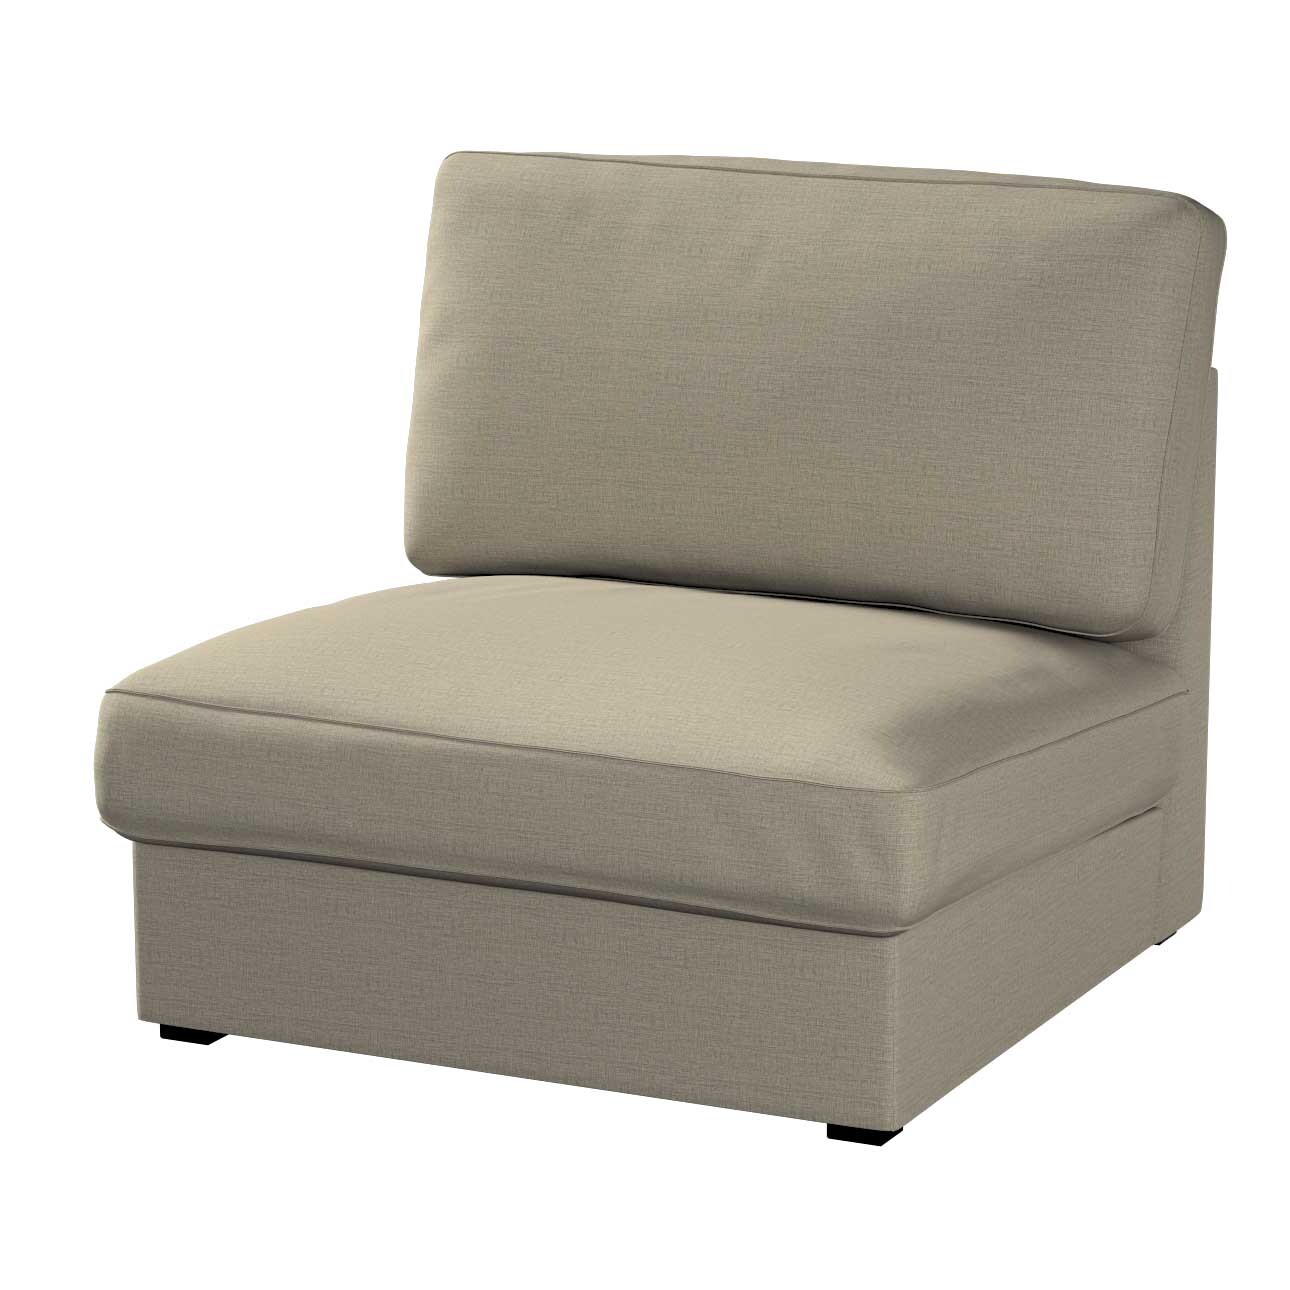 Bezug für Kivik Sessel nicht ausklappbar, beige-grau, Bezug für Sessel Kivi günstig online kaufen